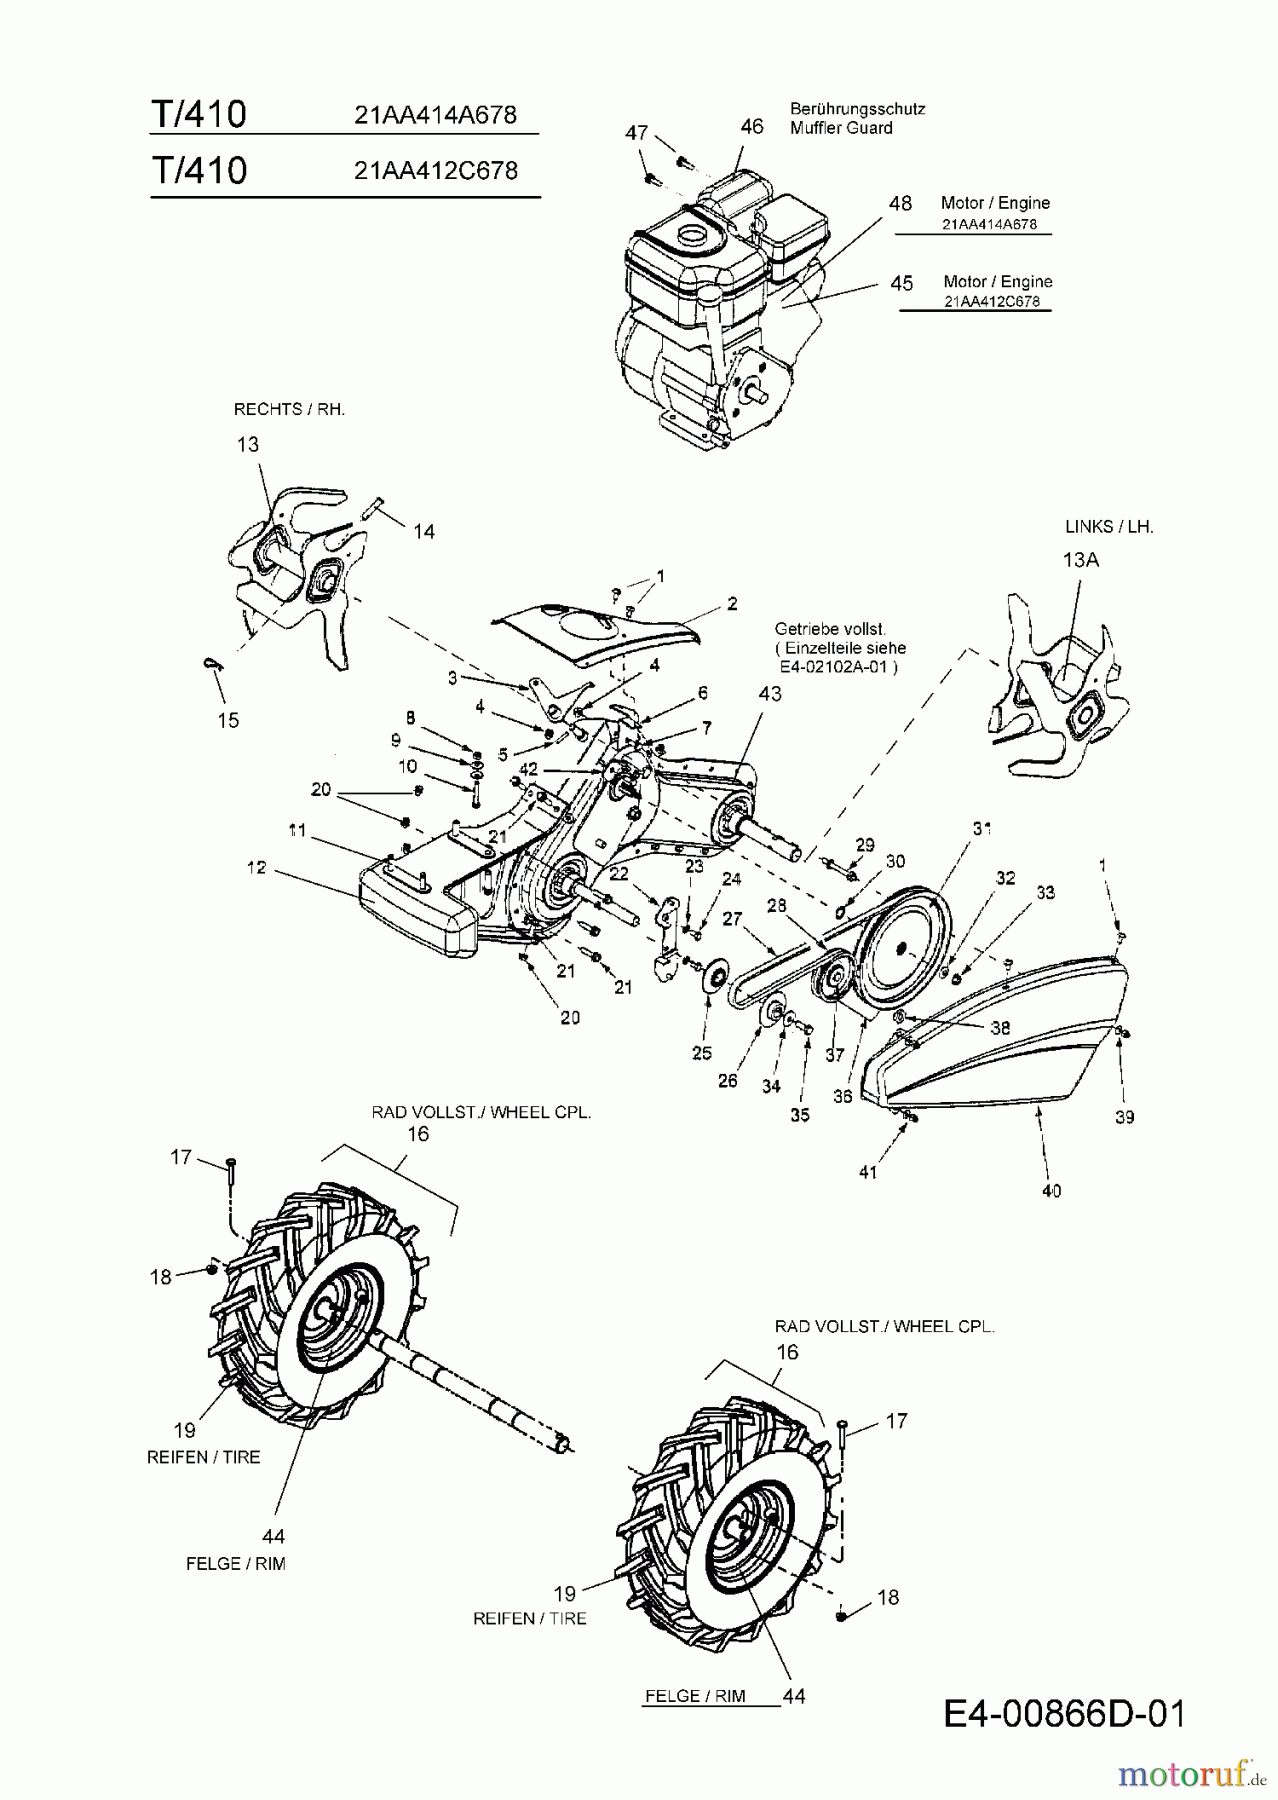  MTD Motorhacken T/410 21AA414A678  (2008) Getriebe, Räder, Hacksterne